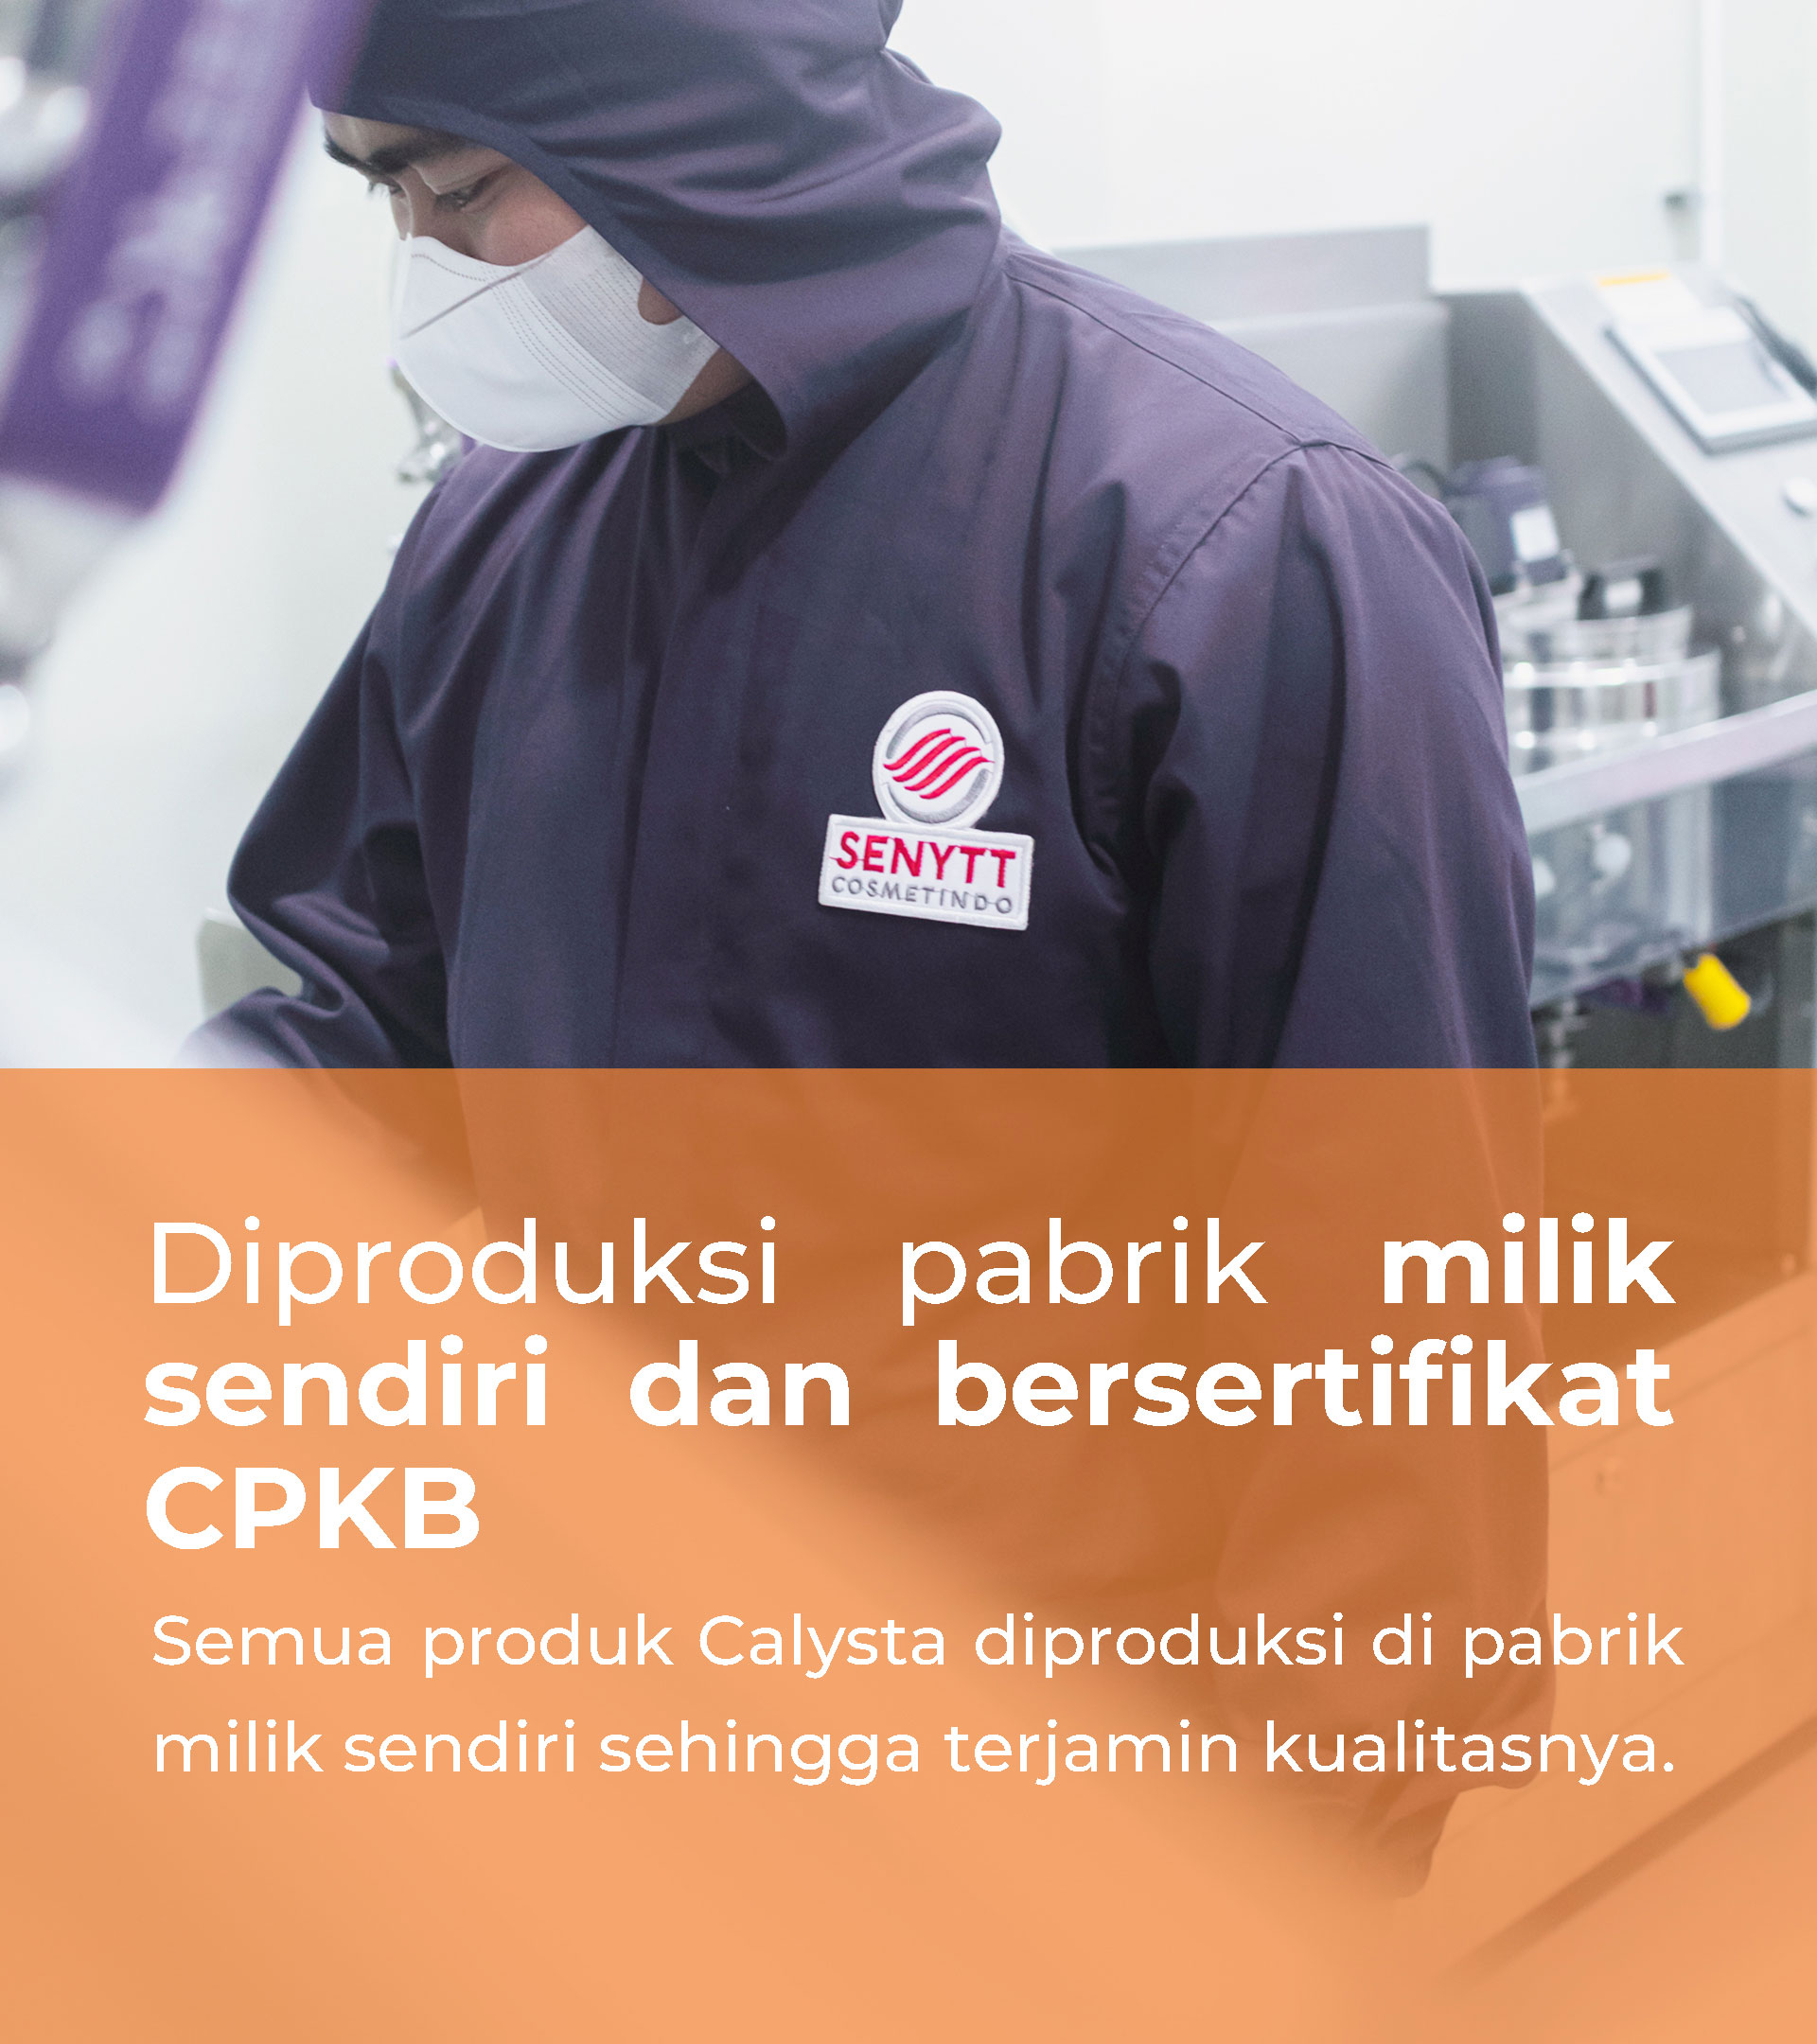 Diproduksi pabrik milik sendiri dan bersertifikat CPKB